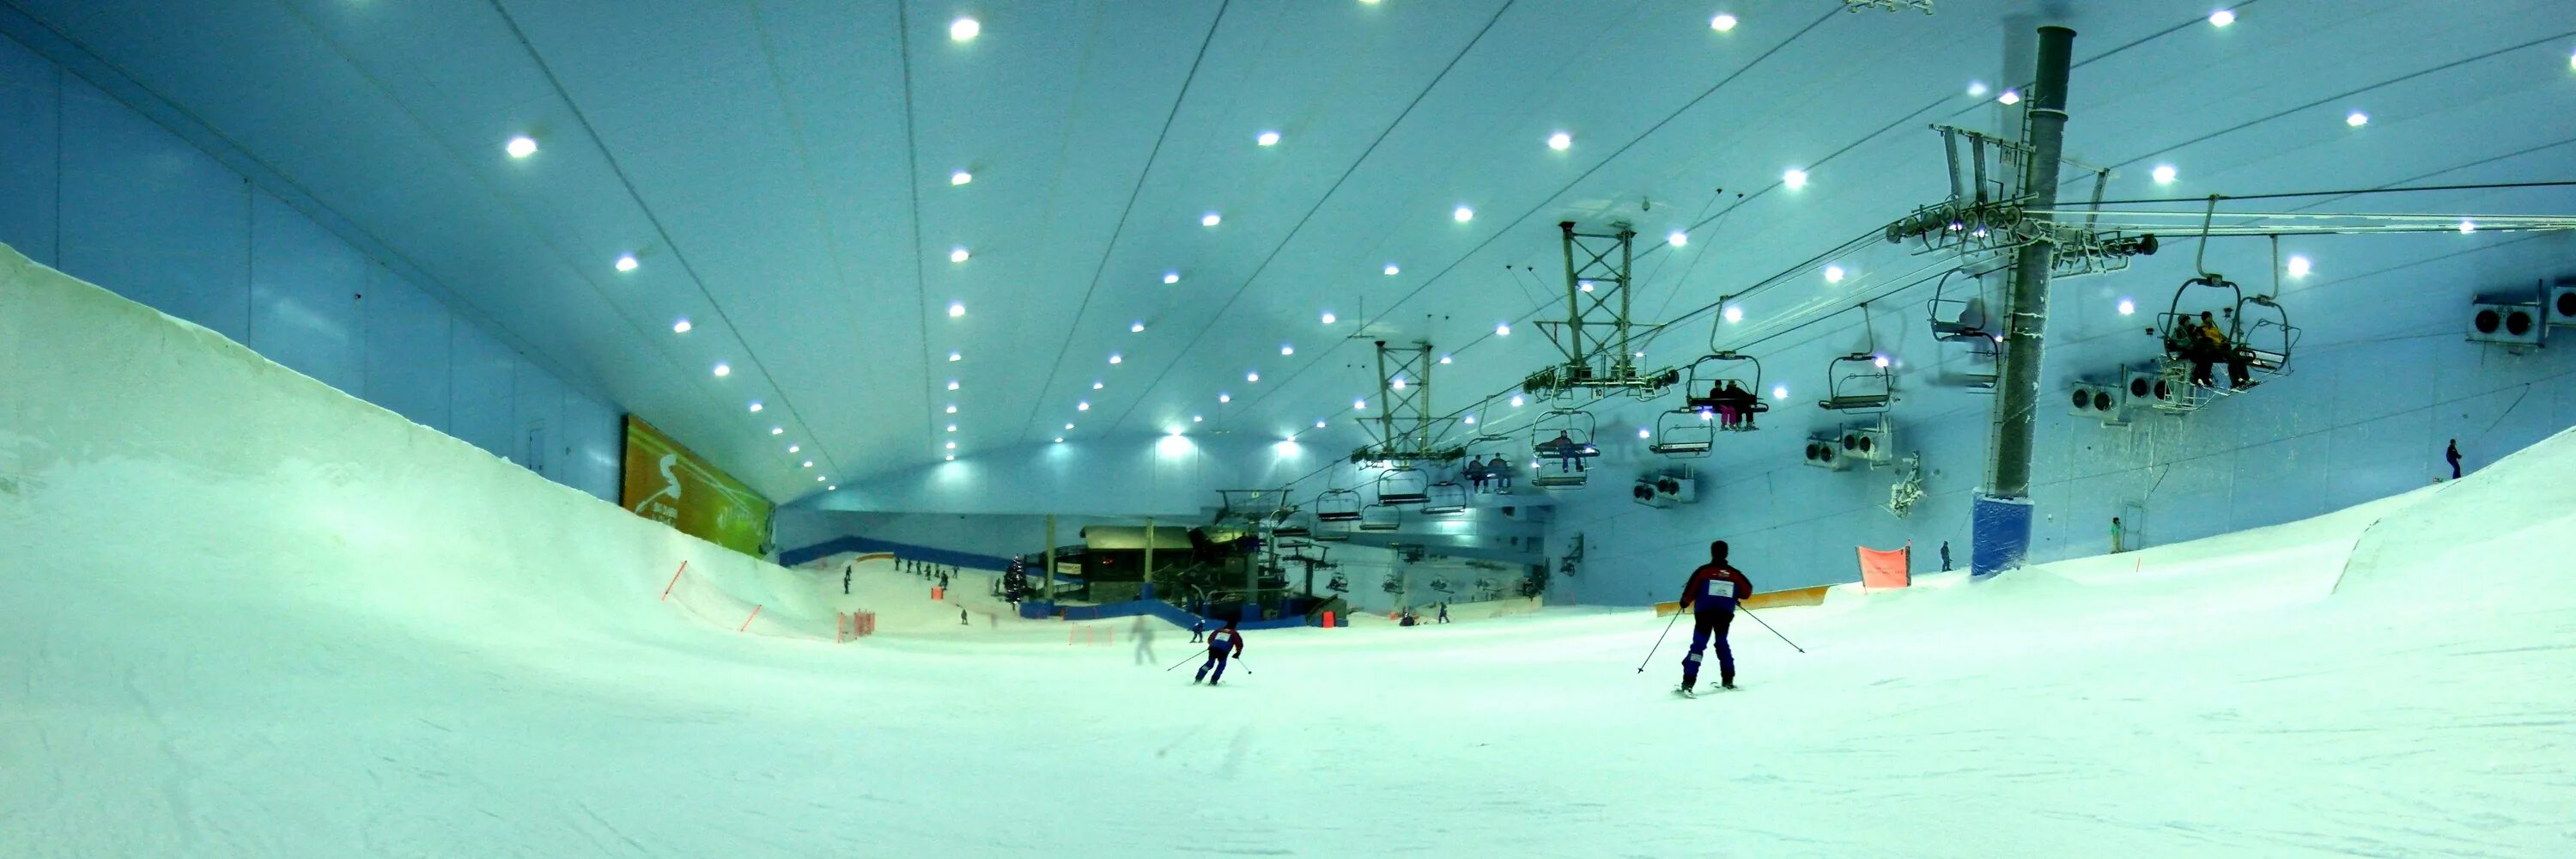 Дубай горнолыжный. Ski Dubai Дубай. Горнолыжный комплекс Скай Дубай. Дубай Молл лыжная трасса. Молл Эмиратов и горнолыжный комплекс «ски Дубай».